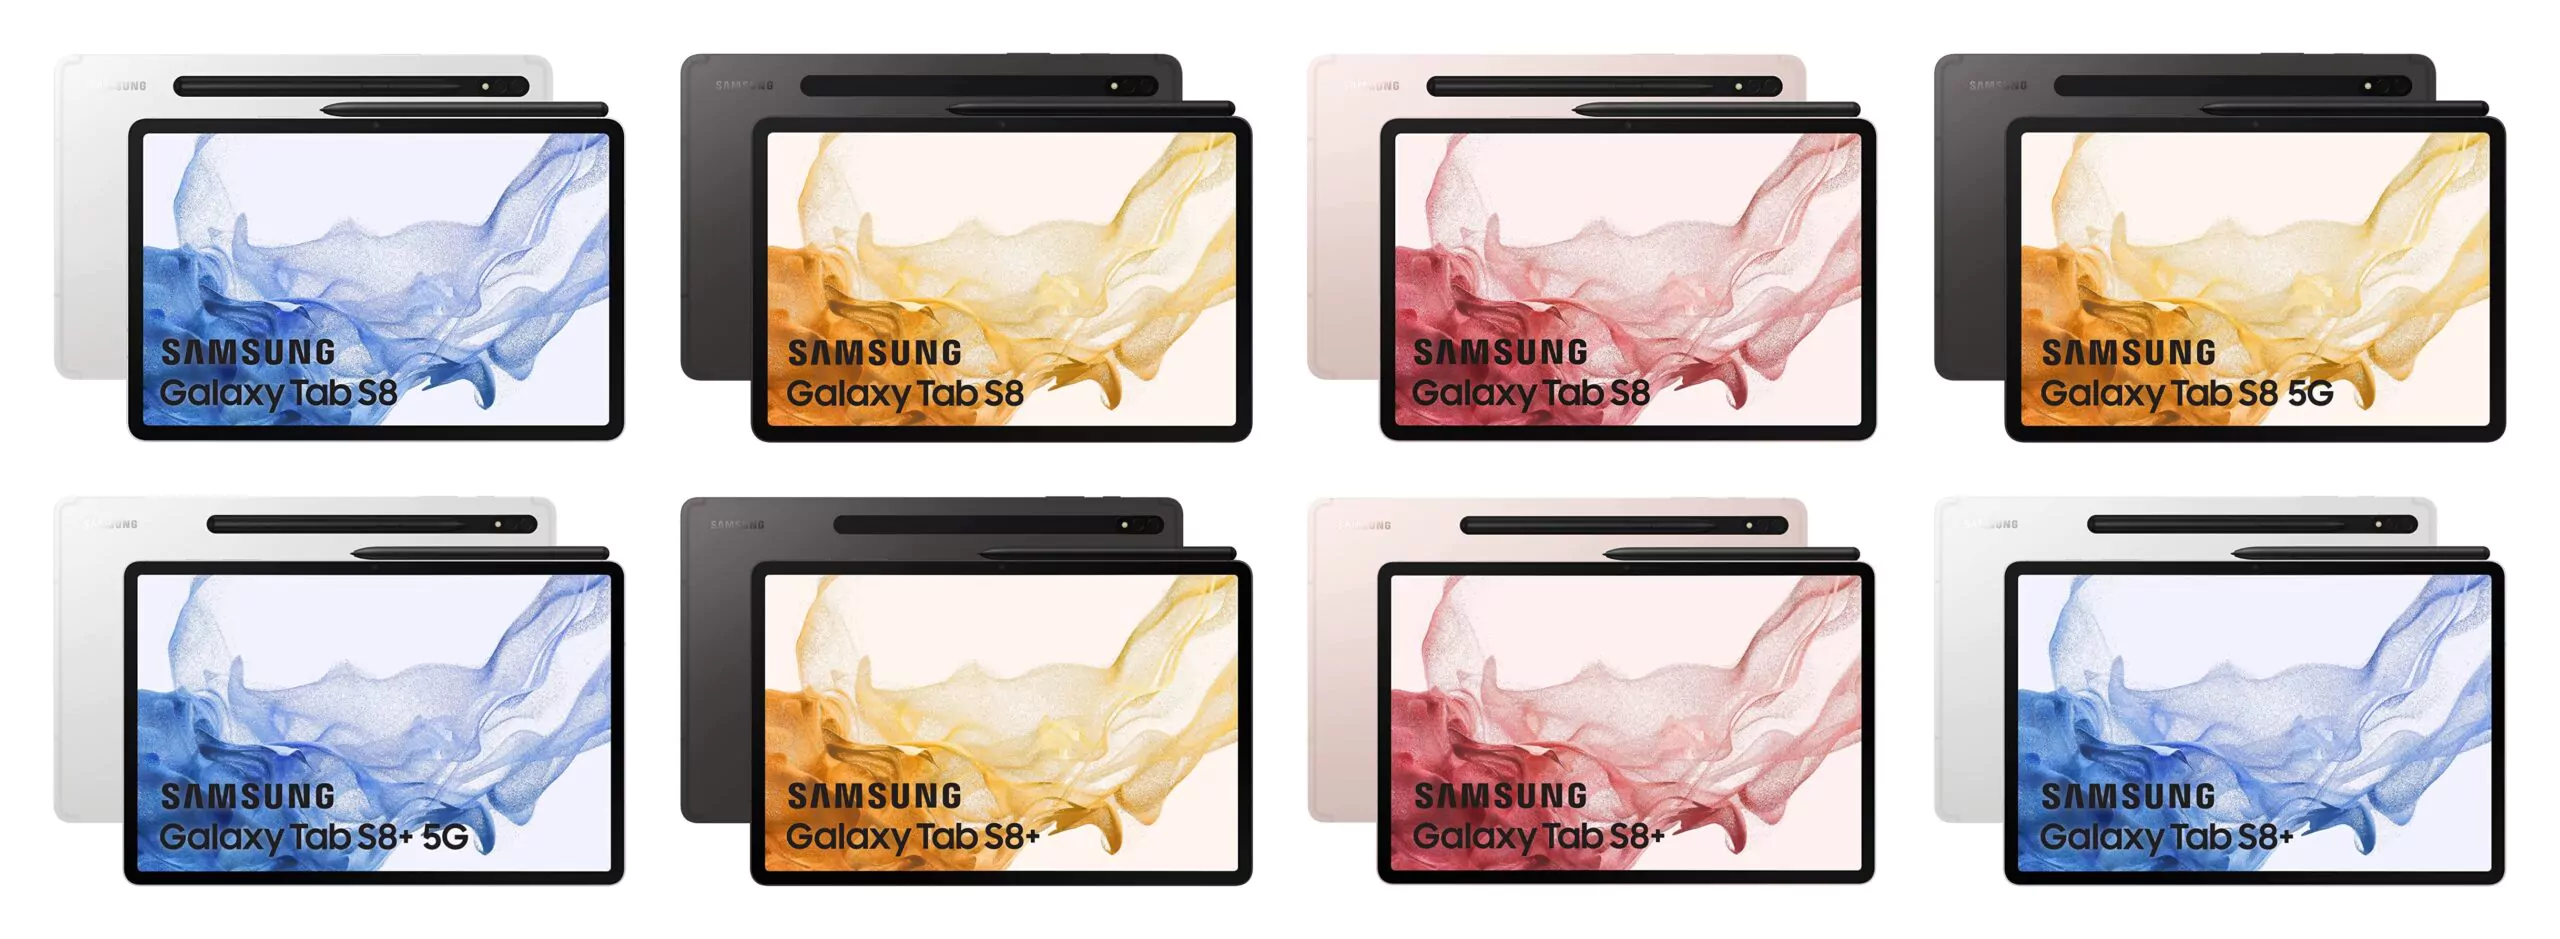 Samsung Galaxy S8 Plus Wallpapers  Top Những Hình Ảnh Đẹp